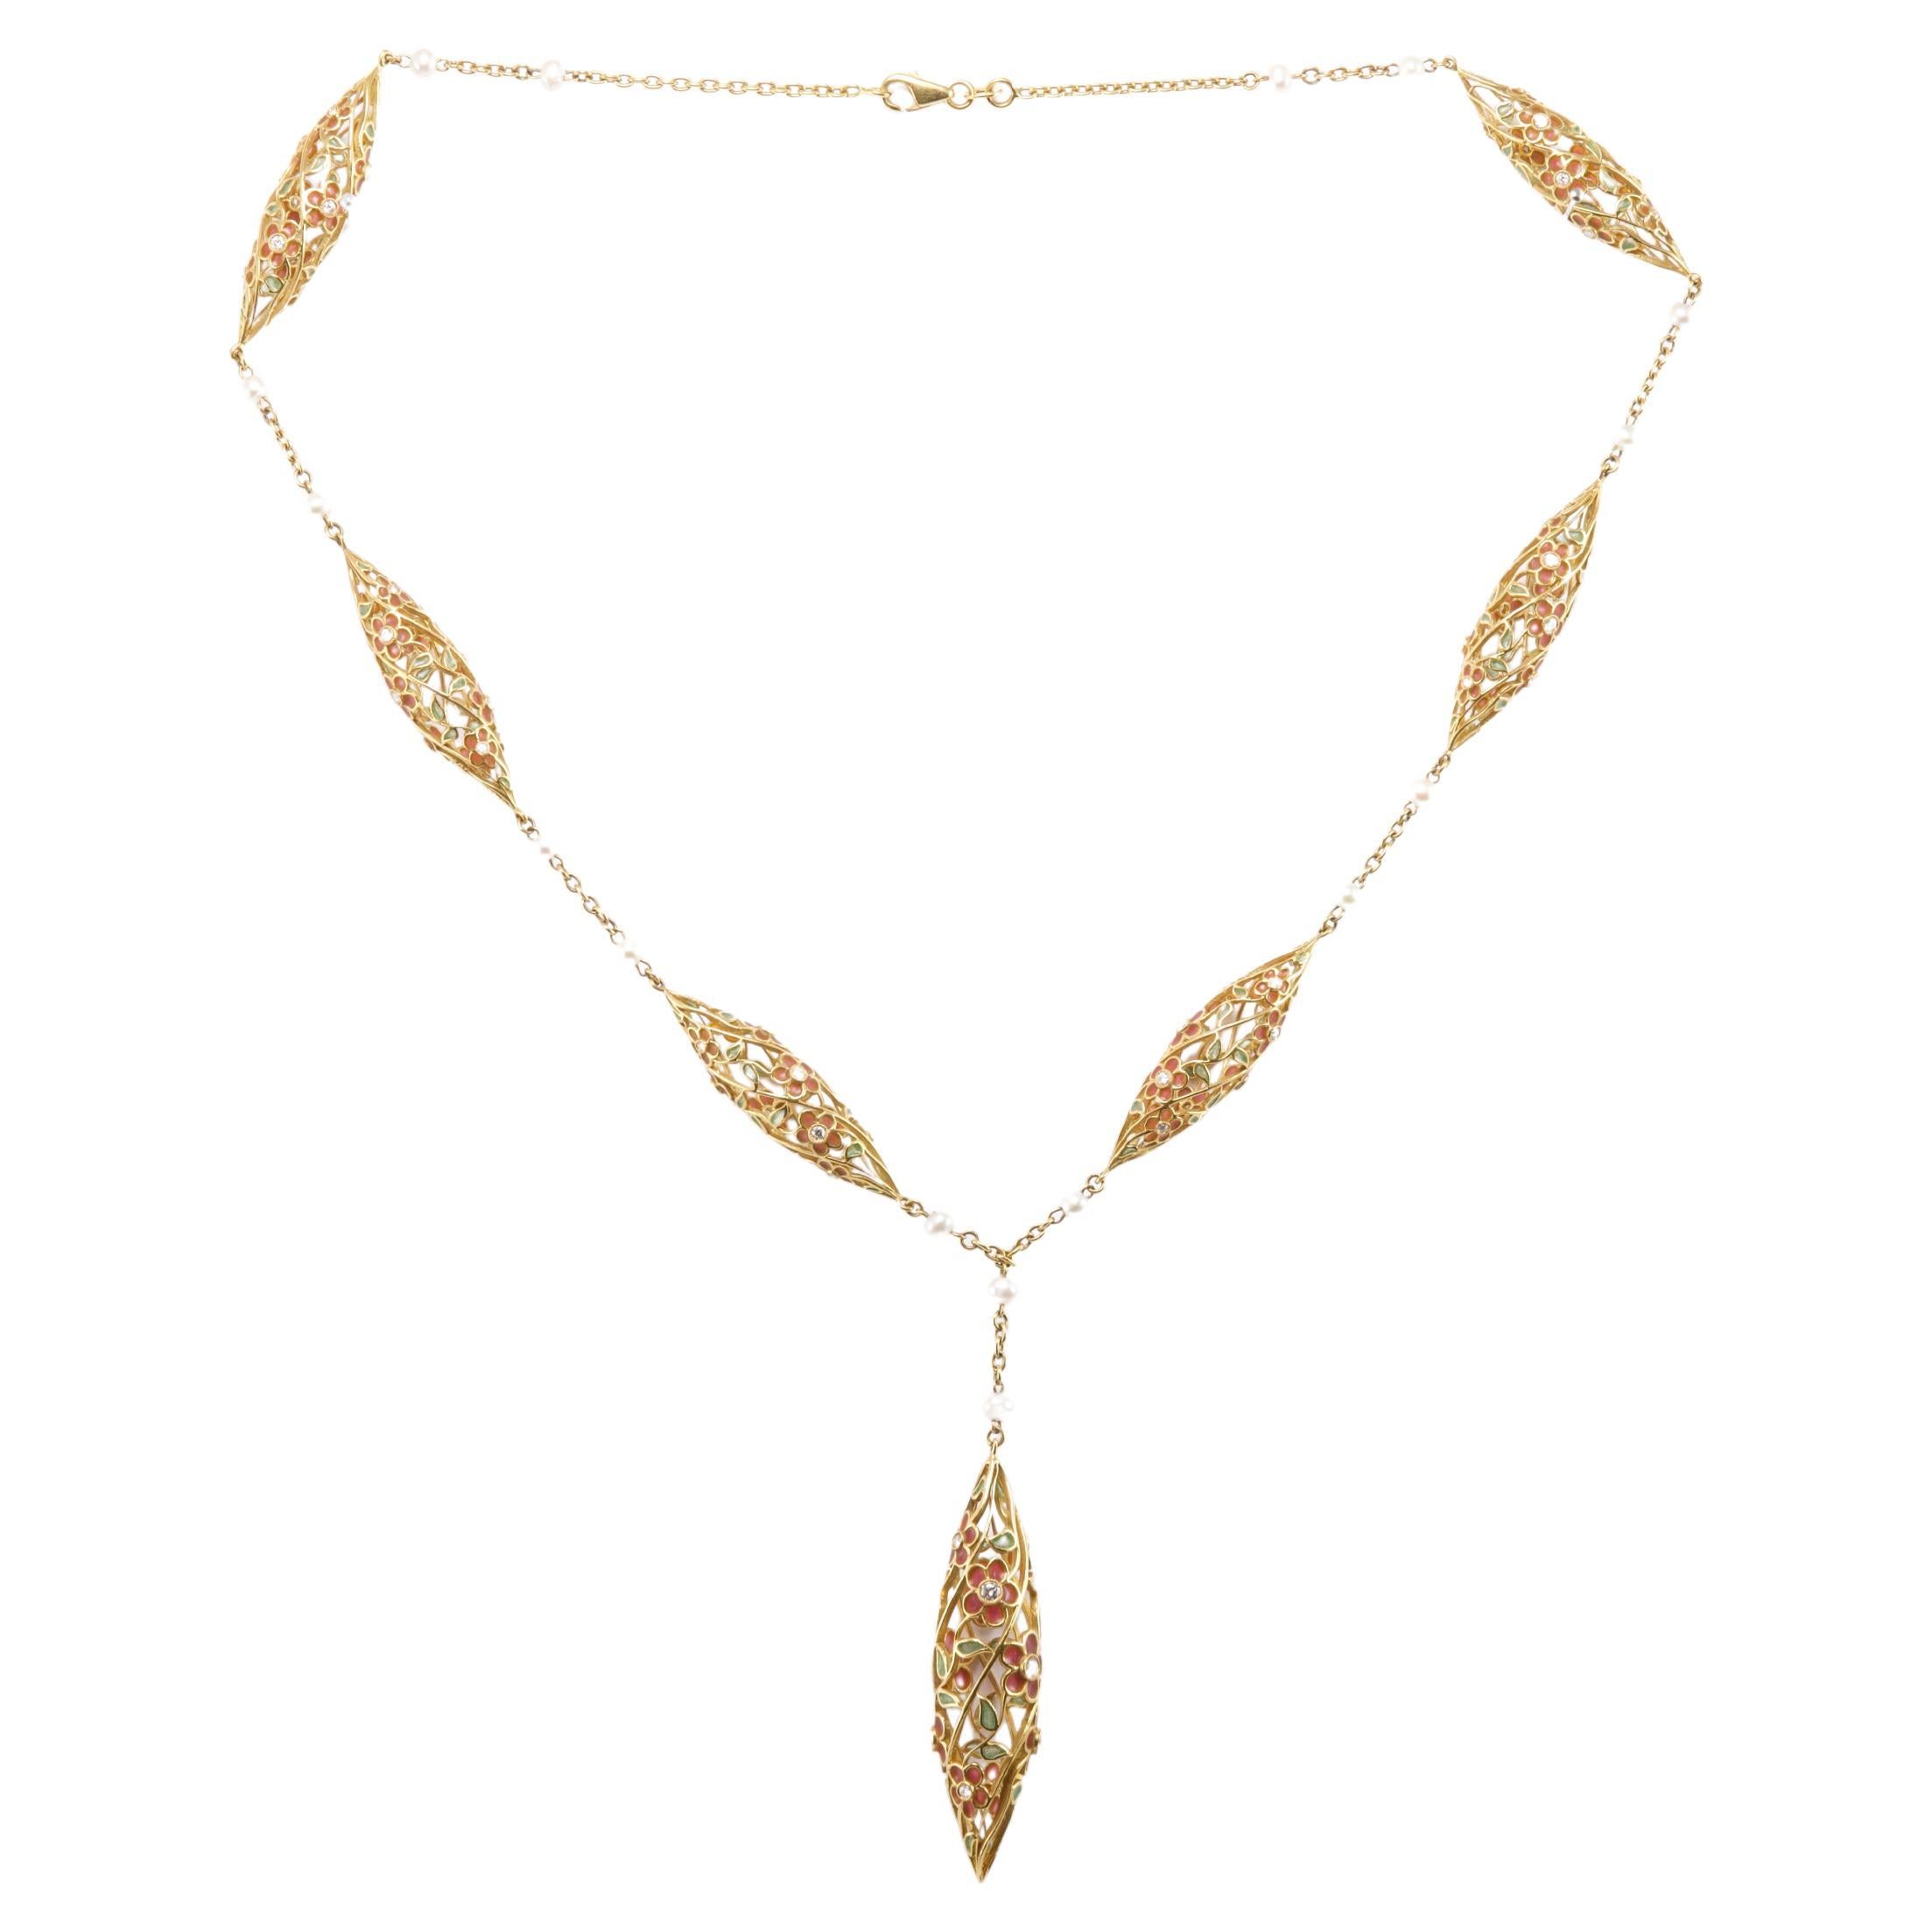 Olympus Art zertifizierte, emaillierte, Diamant- und Gold-Regentropfen-Halskette